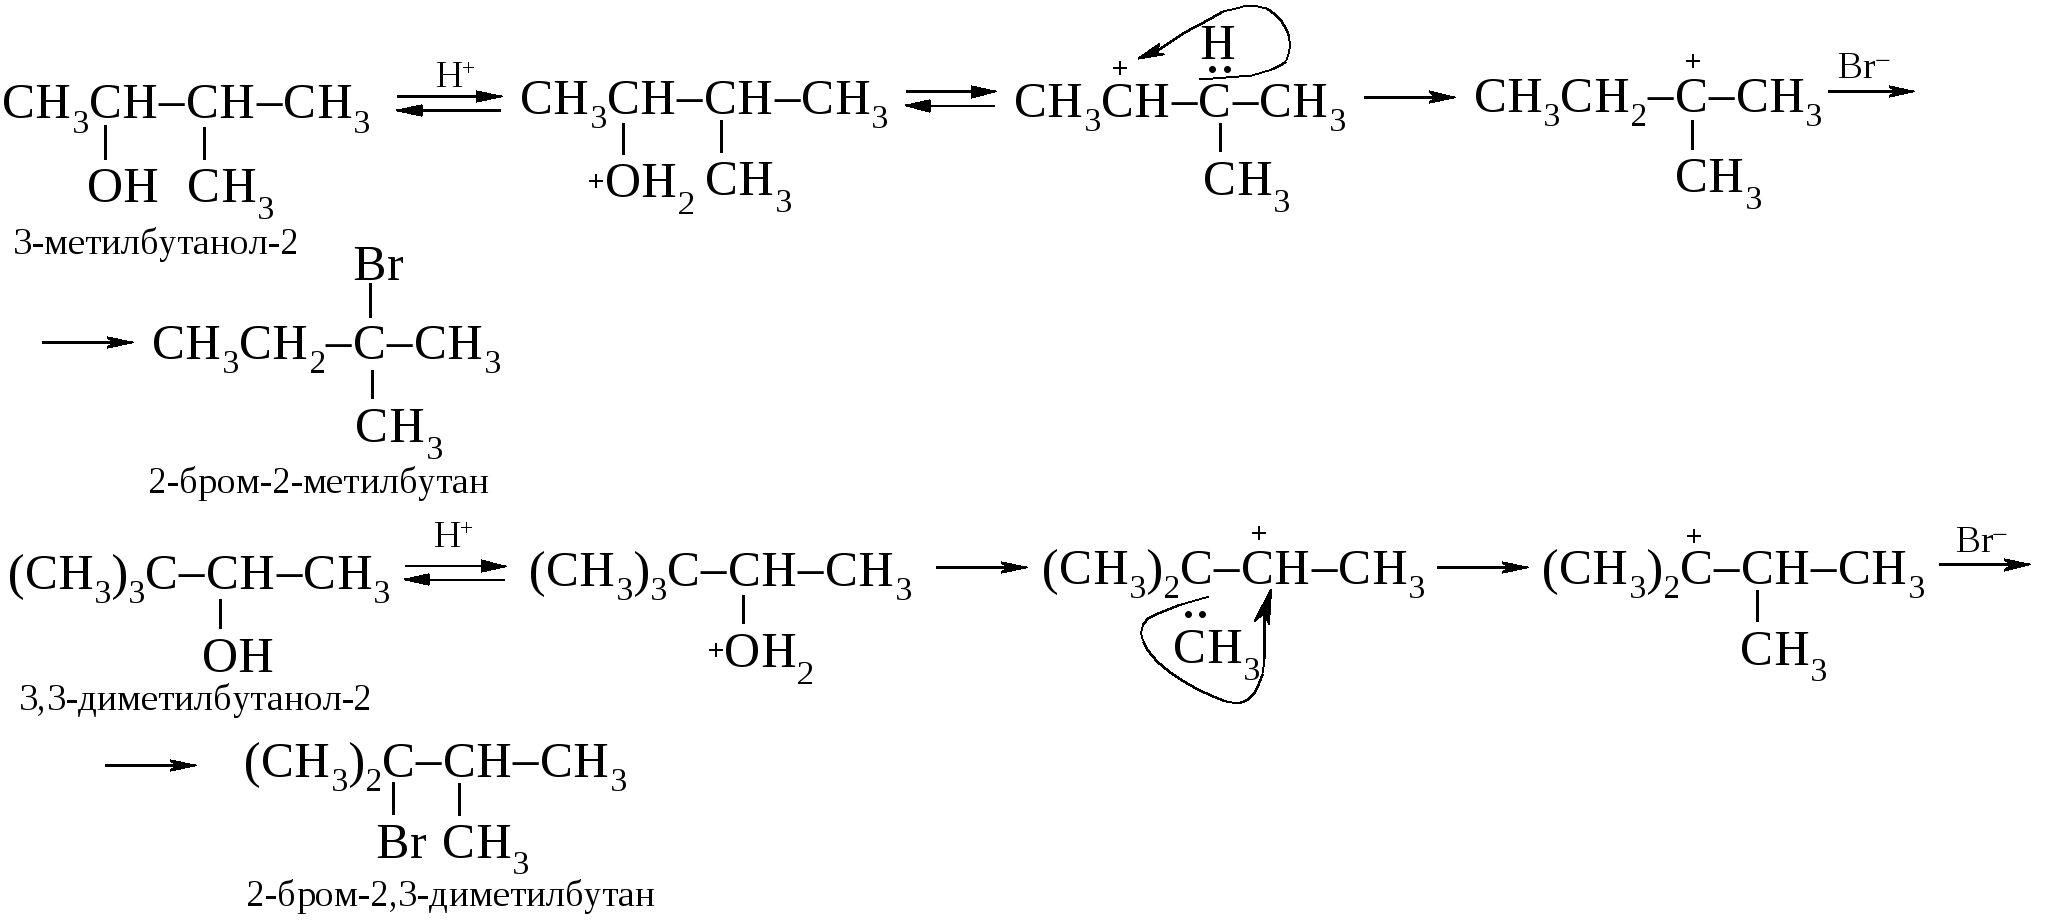 Бром диметилбутан. 1 1 Диметокси 2 метилбутана. 2 Метилбутанол 2. 3 Метилбутанол 1. 3 Метилбутанол 2.